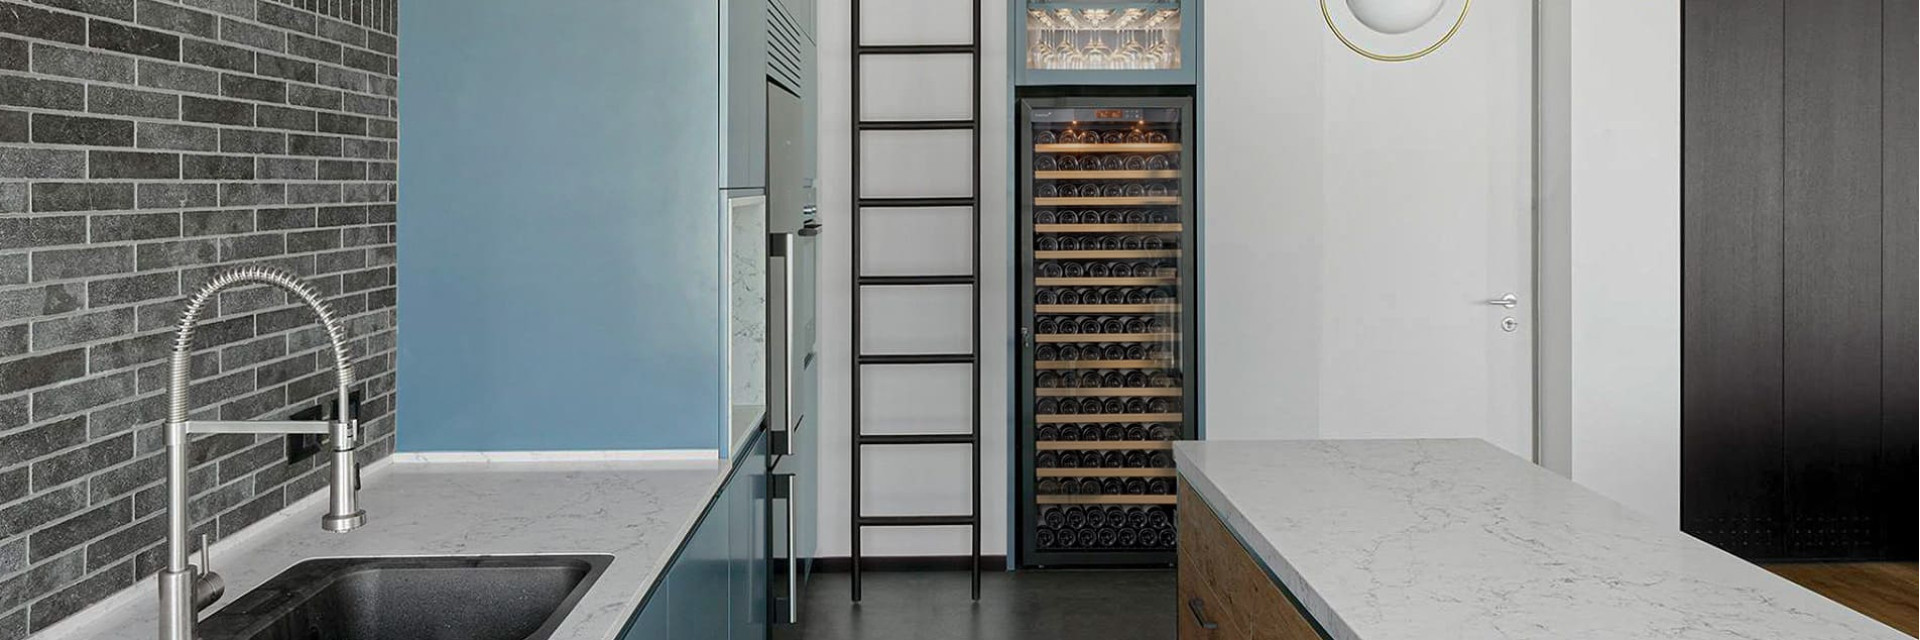 Eingebauter Weinkühlschrank in der Küche für eine große Kapazität an Flaschen, die auf Serviertemperatur gehalten werden. - Pure-Reihe